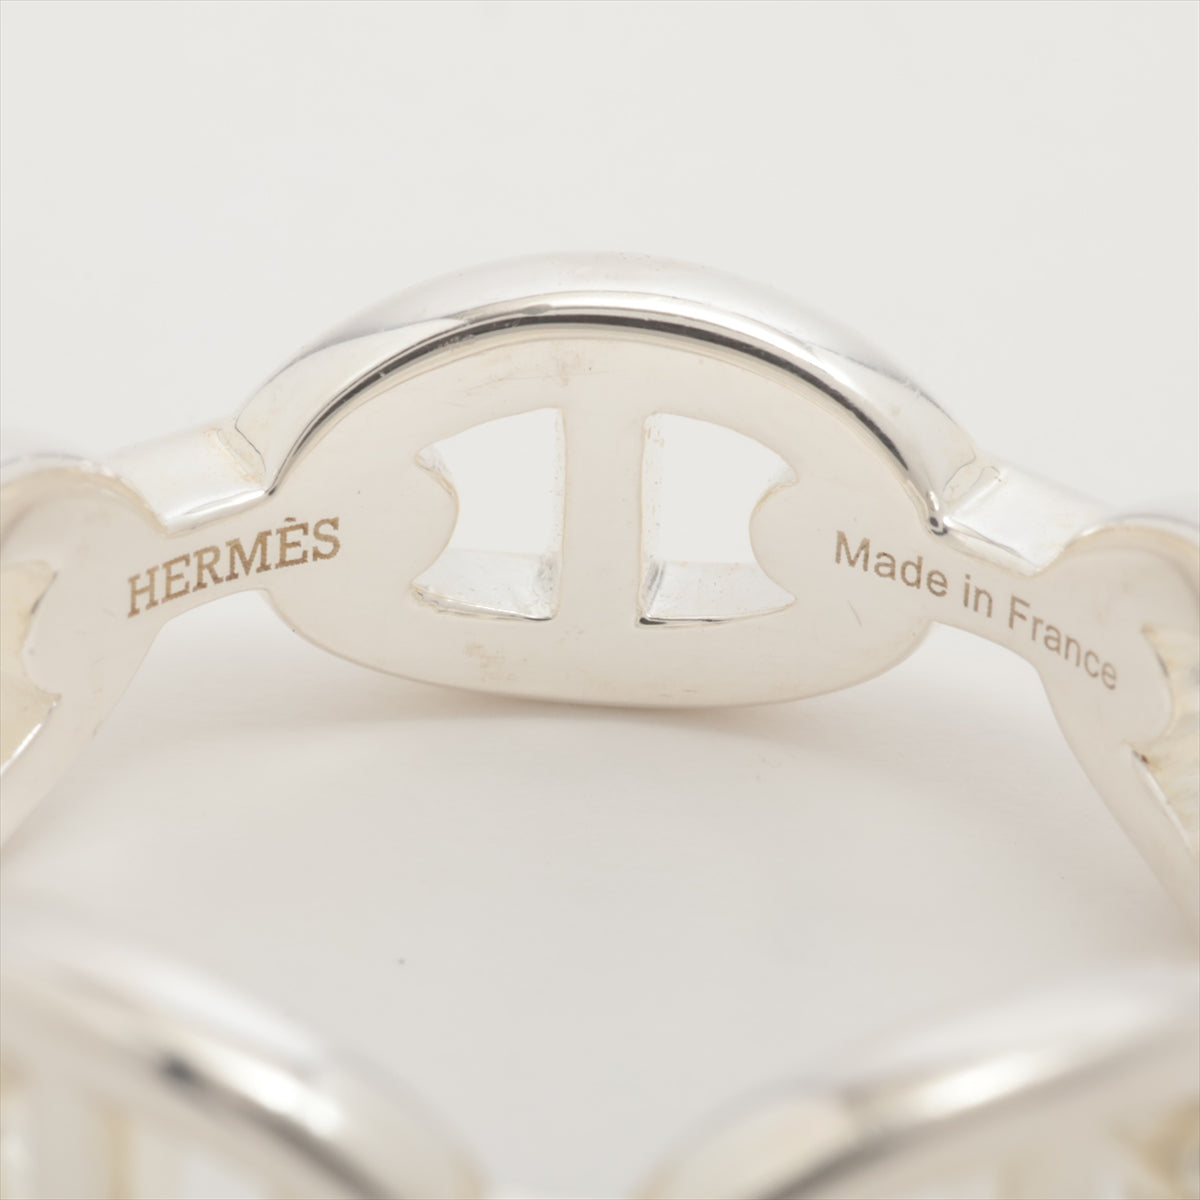 Hermès Chaîne d'Ancre Enchainee 22AJ132387 rings 59 925 6.1g Silver